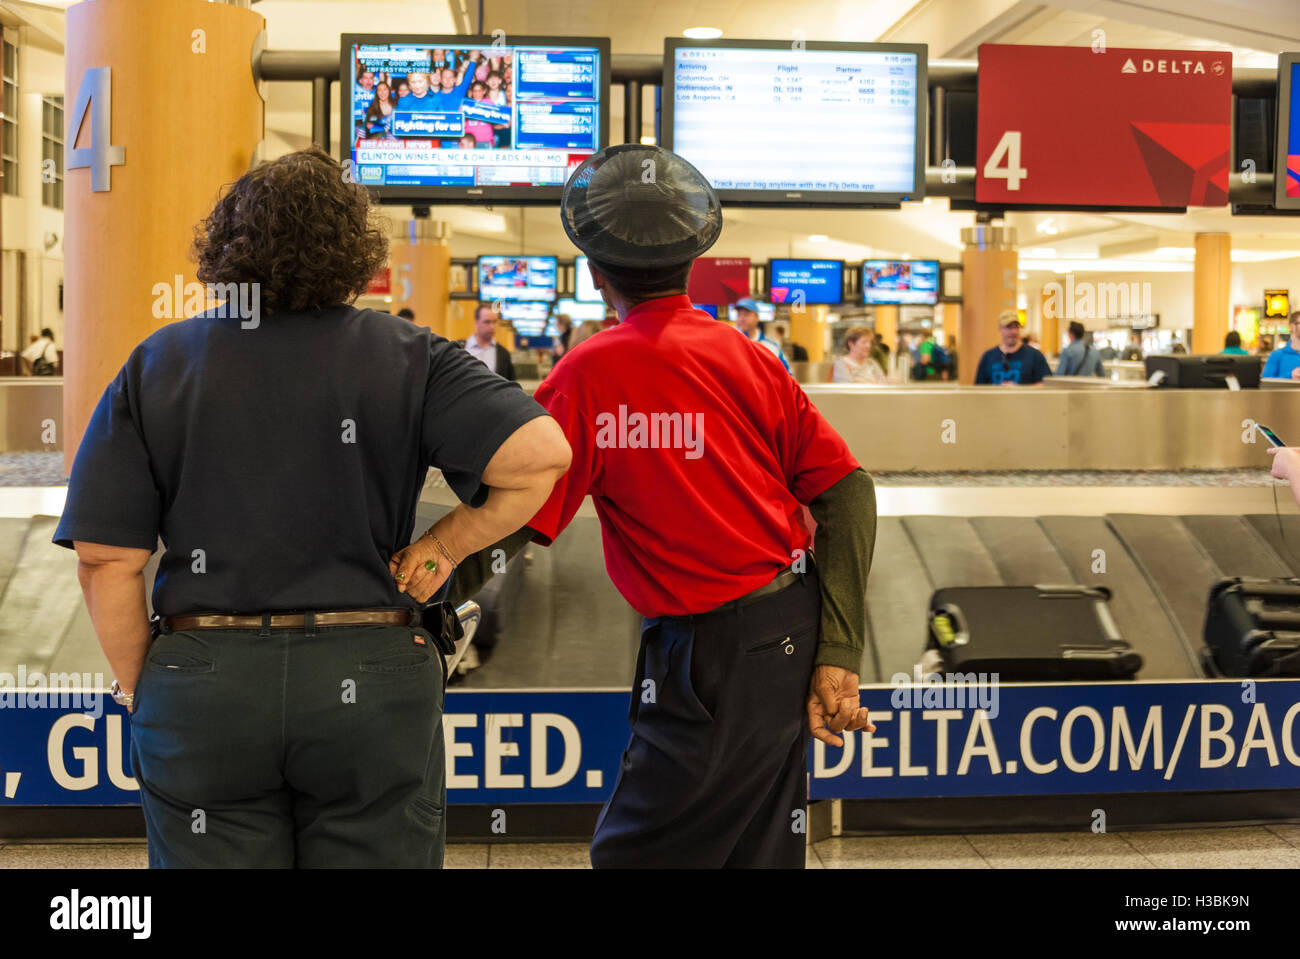 Les employés de l'aéroport d'Atlanta watch résultats des élections primaires, Hillary Clinton, campagne présidentielle de Delta de réclamation des bagages. Banque D'Images